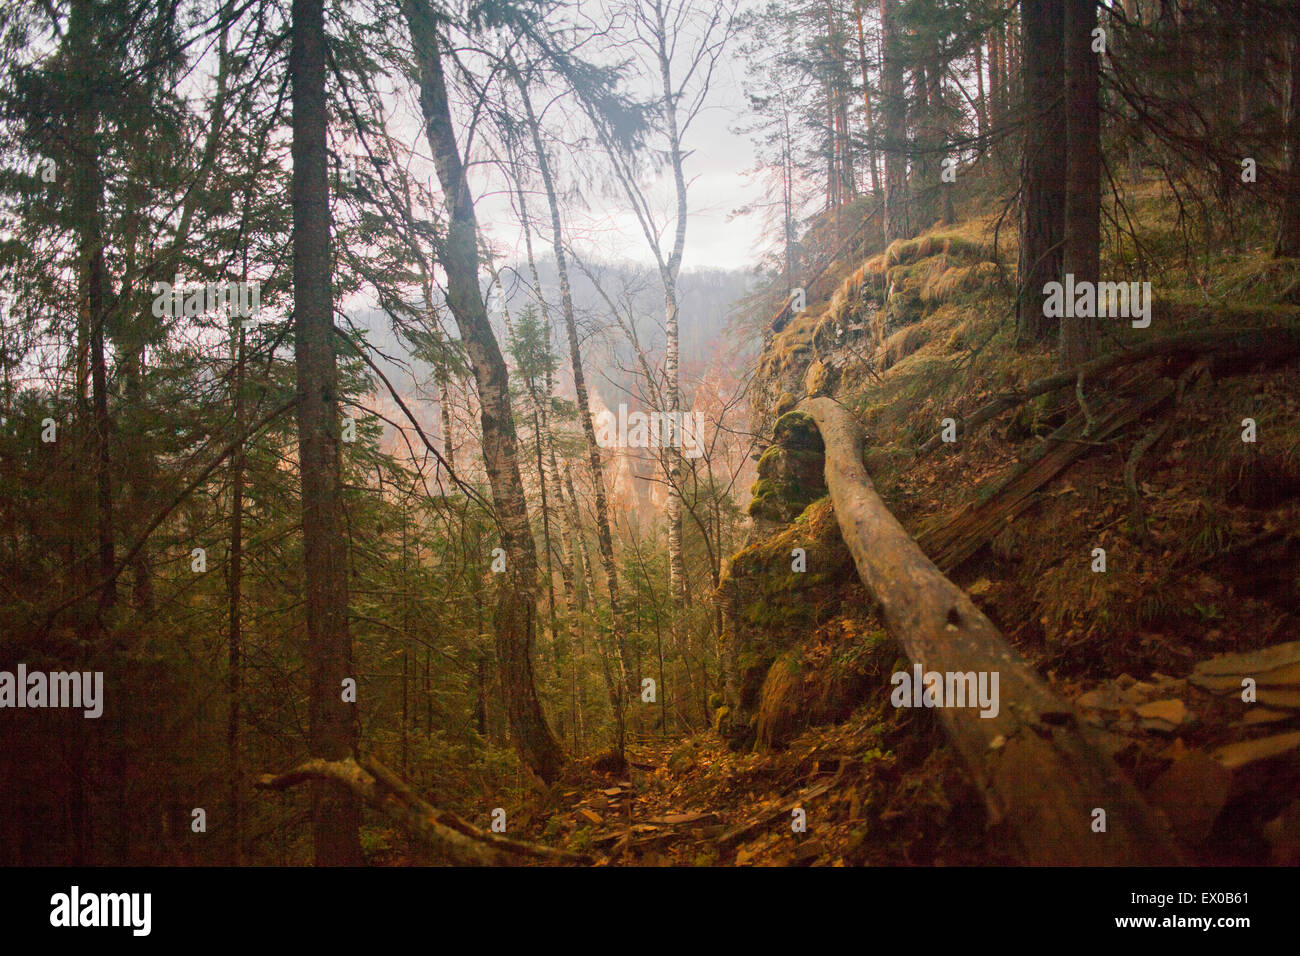 Foresta con albero caduto, Sarsy Village, Sverdlovsk oblast, Russia Foto Stock